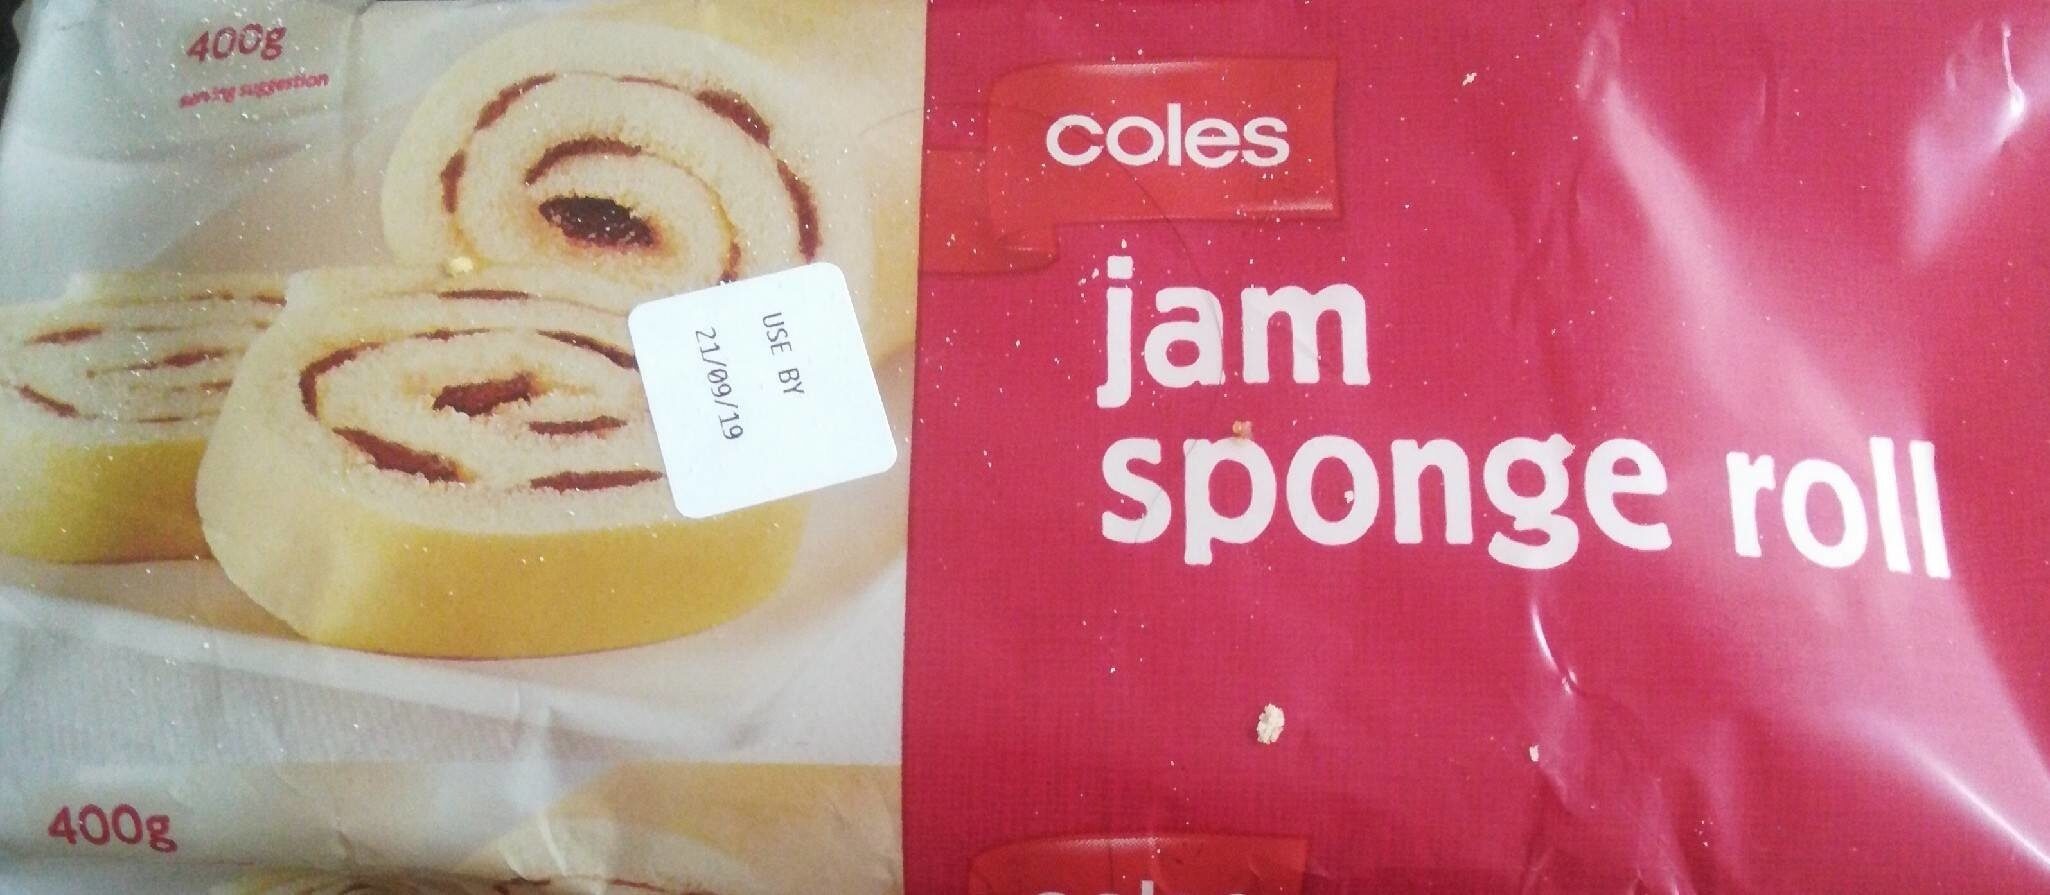 jam sponge roll - Product